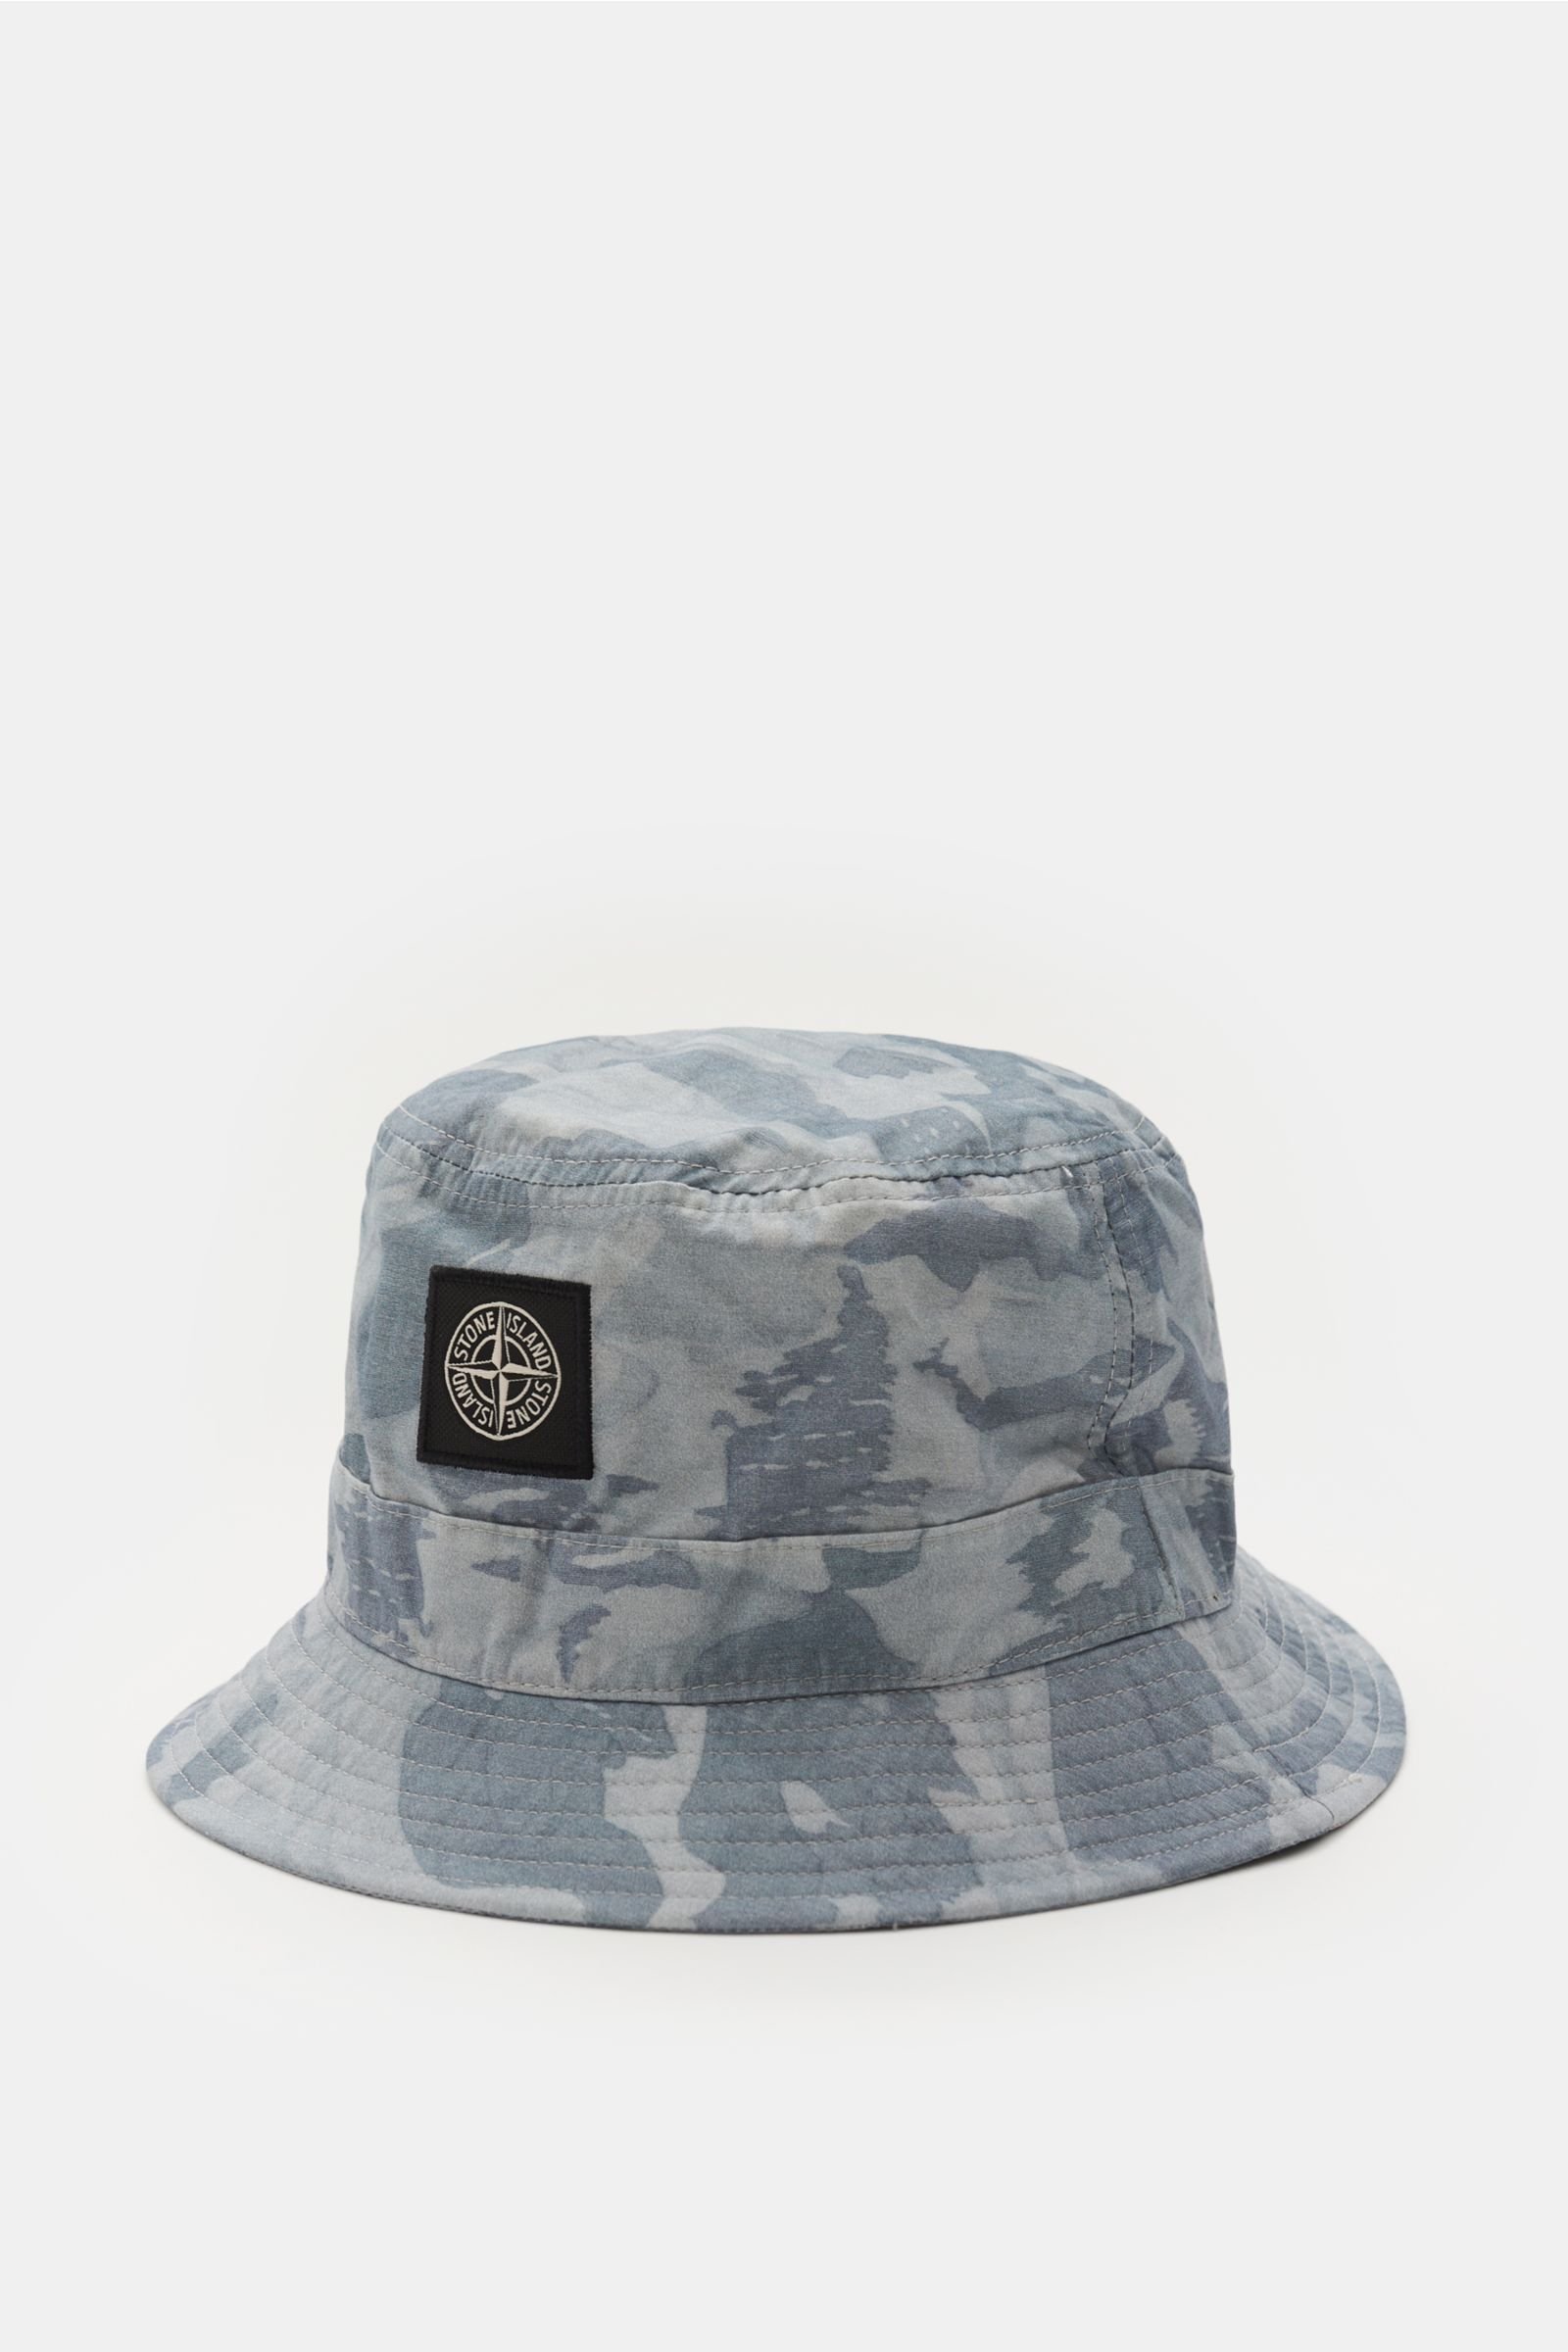 Bucket hat grey-blue patterned